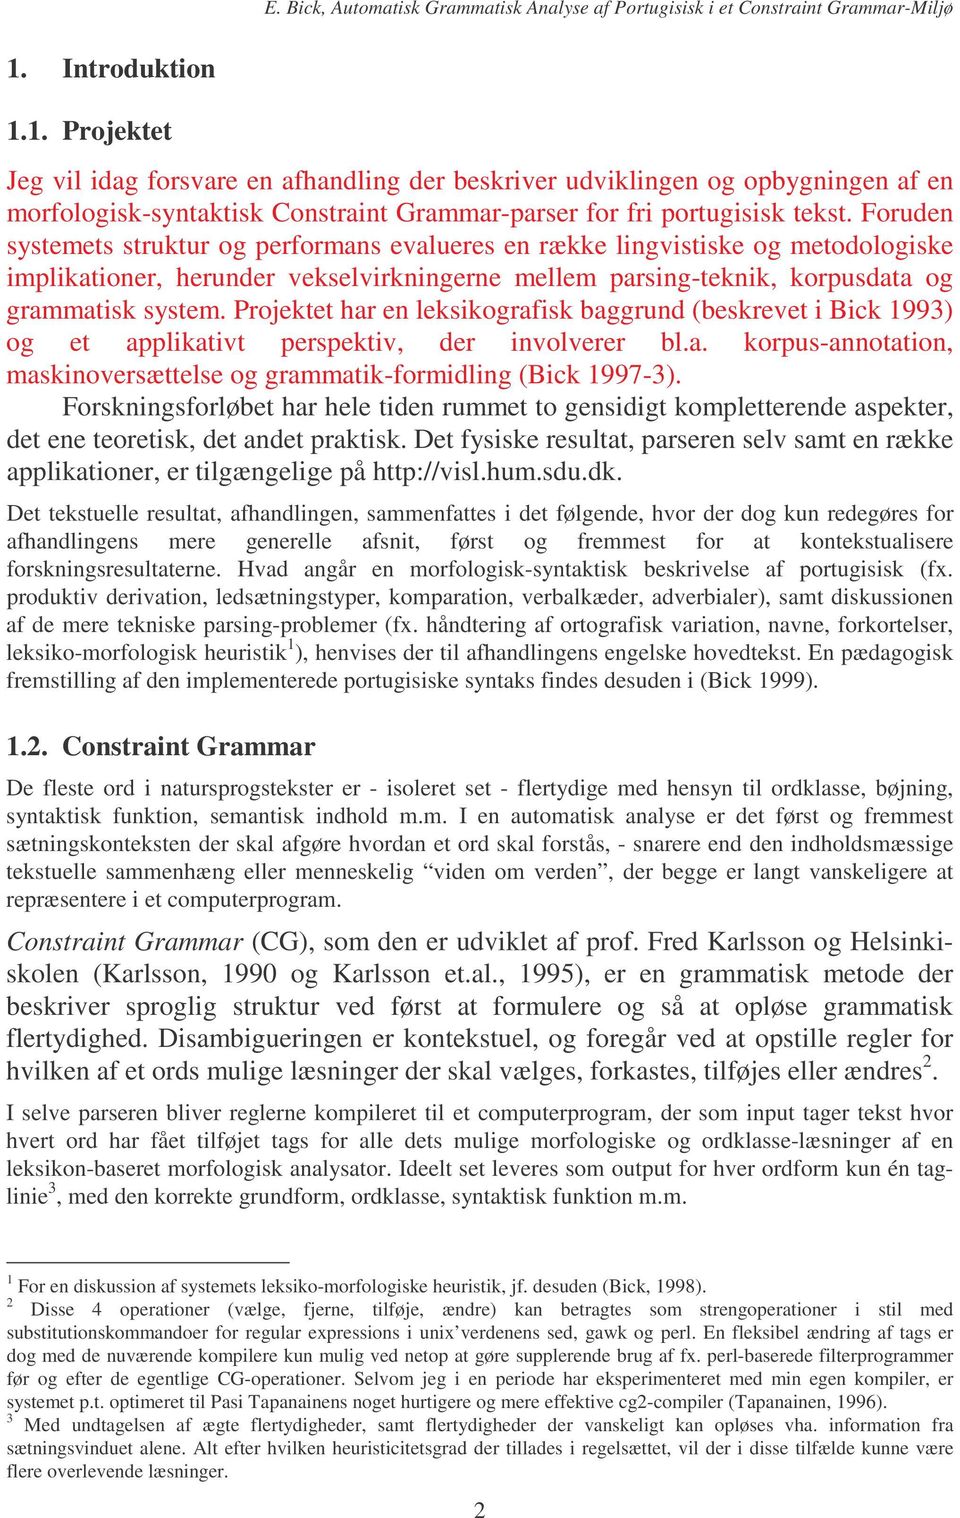 Projektet har en leksikografisk baggrund (beskrevet i Bick 1993) og et applikativt perspektiv, der involverer bl.a. korpus-annotation, maskinoversættelse og grammatik-formidling (Bick 1997-3).